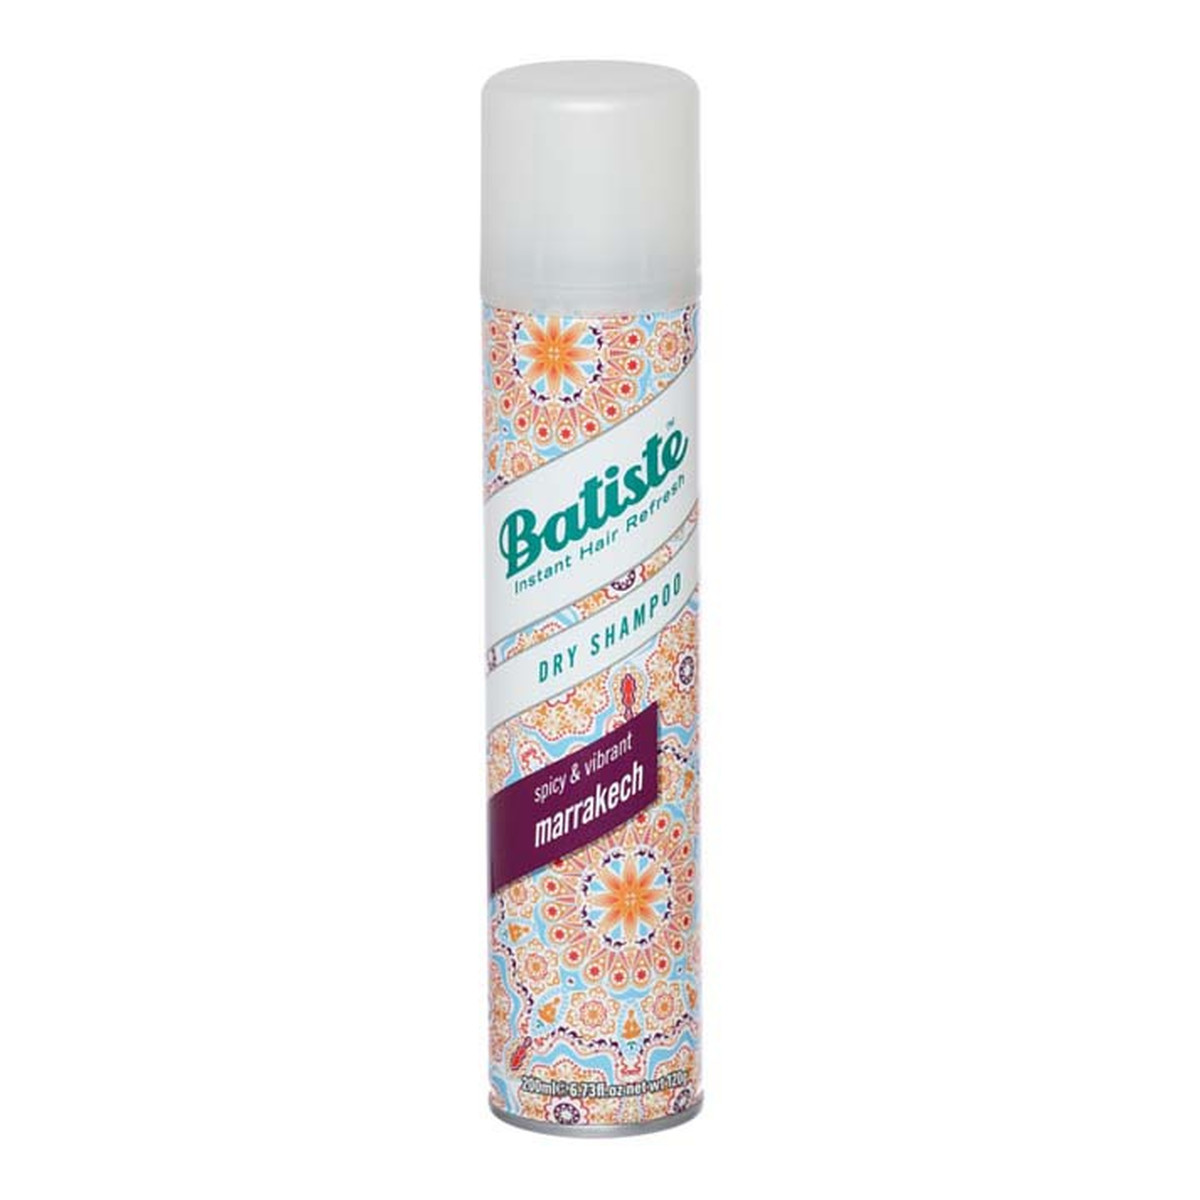 Batiste Dry Shampoo Marrakech Suchy Szampon Do Włosów 200ml